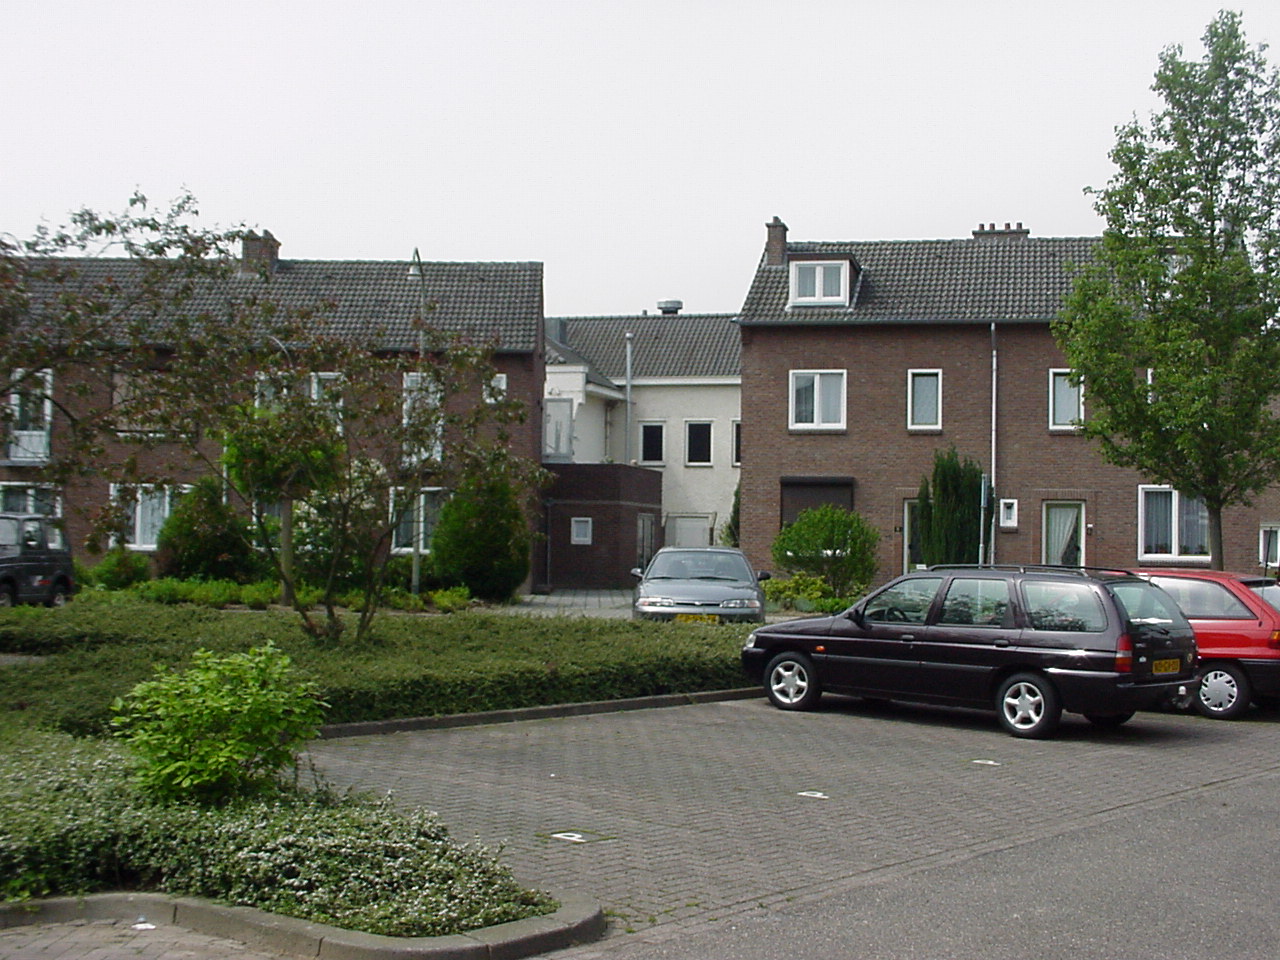 Wilhelminastraat 18, 6271 AV Gulpen, Nederland